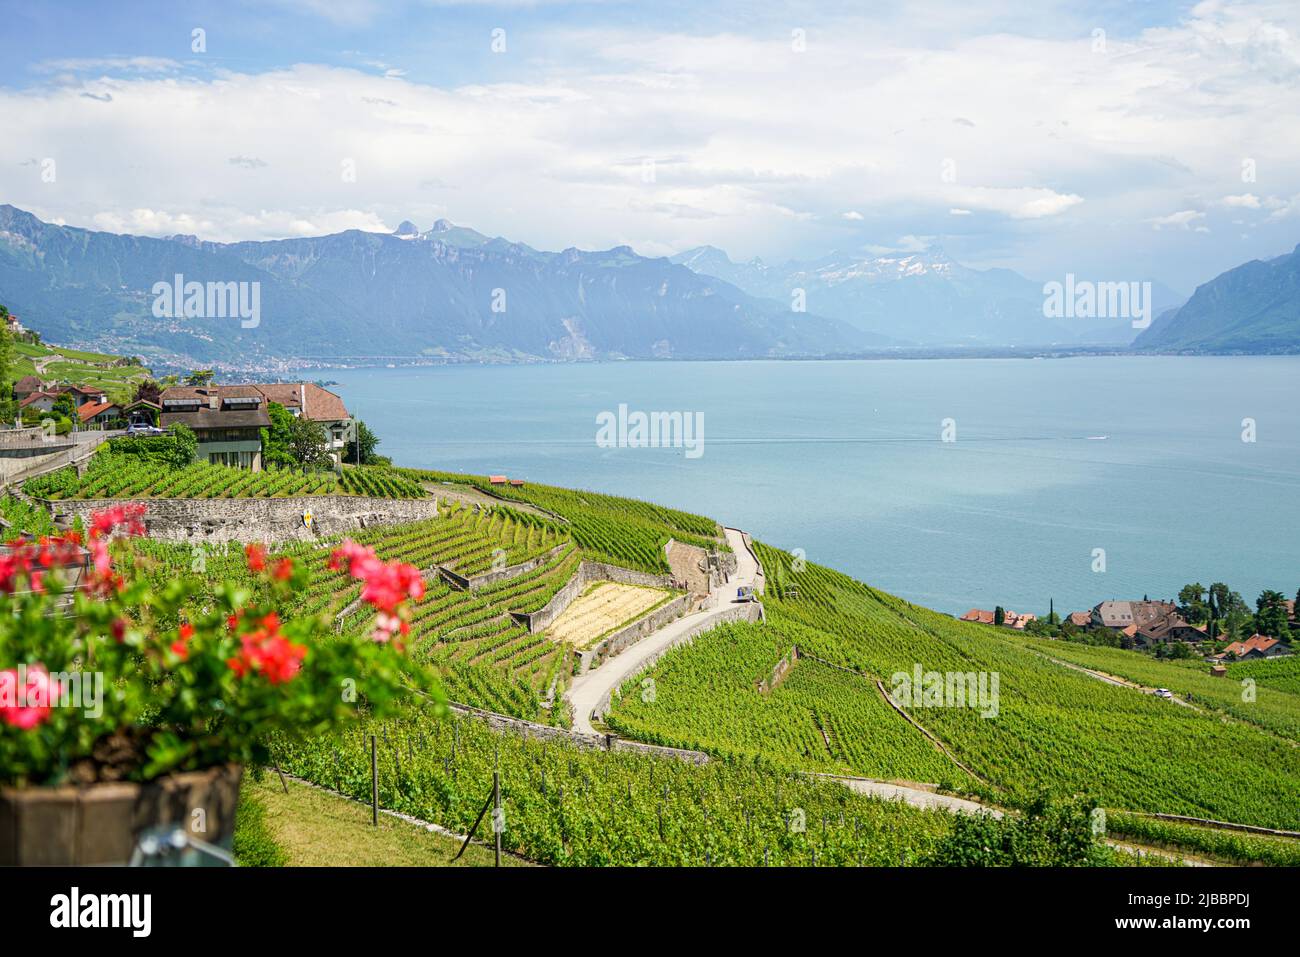 Lavaux, avec ses terrasses couvertes de vignobles surplombant le lac Léman, est l'une des régions viticoles les plus connues et les plus fascinantes de Suisse Banque D'Images